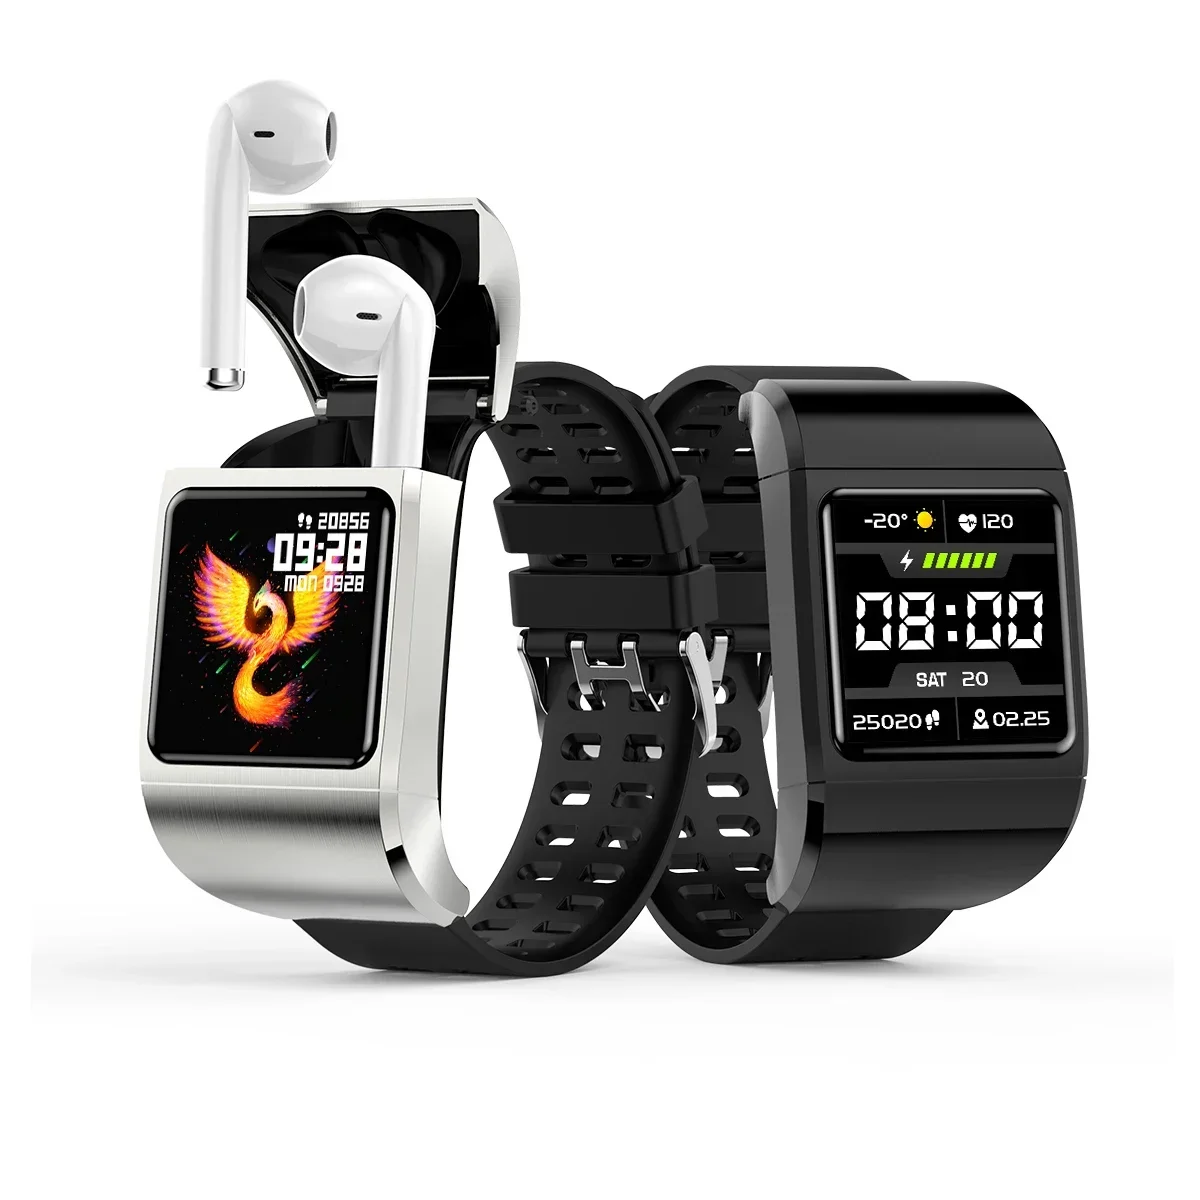 ip68-smart-watch-tws-auricolare-g36pro-13-''schermo-hd-240-240-bt-calling-health-smart-watch-android-ios-smart-watch-auricolari